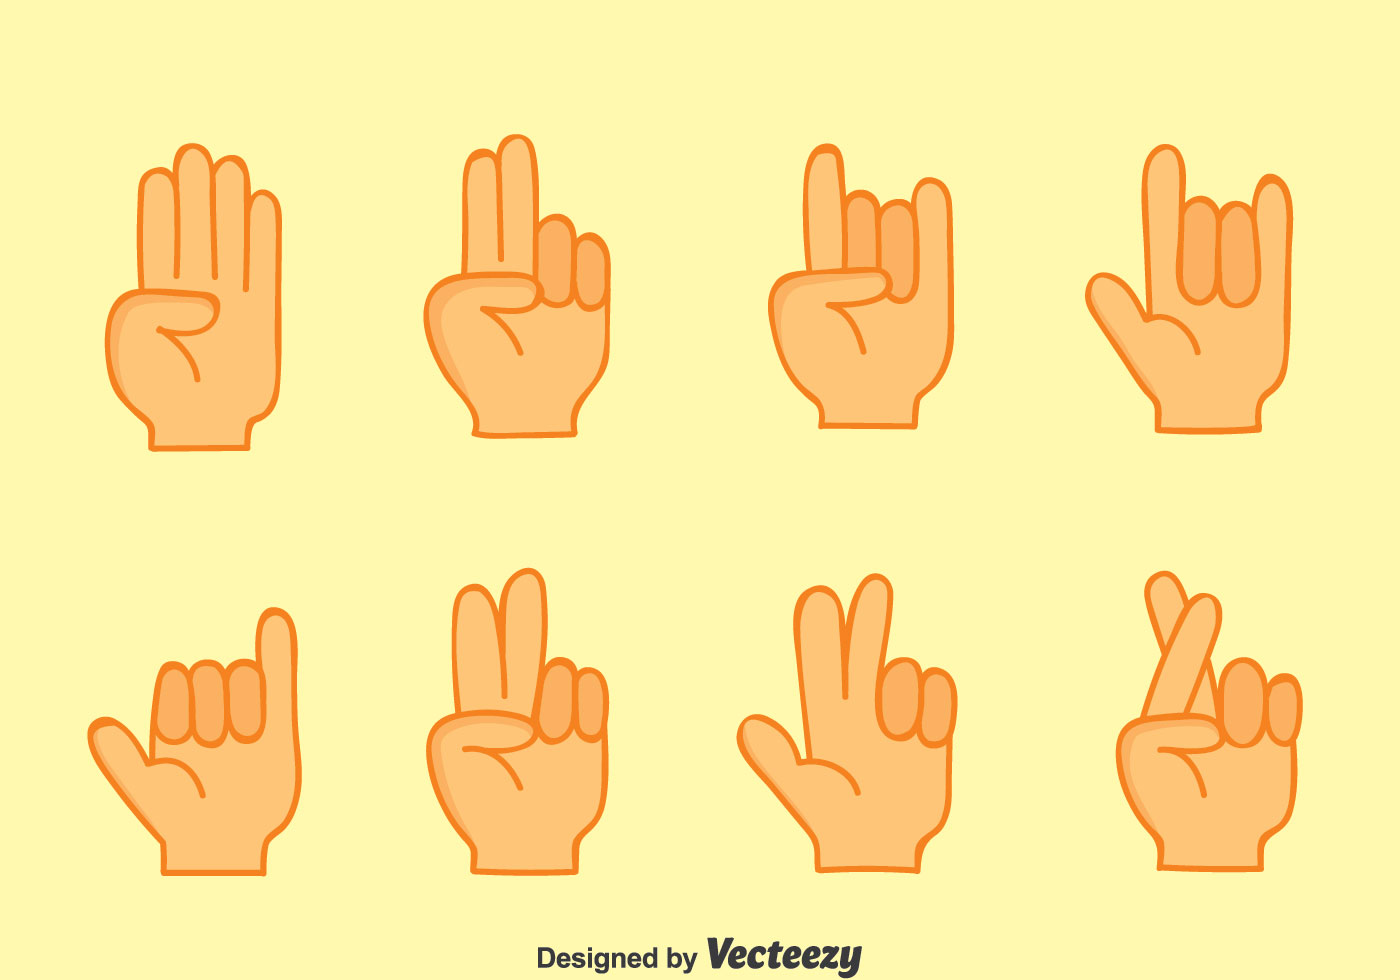 Картинки жесты пальцами рук